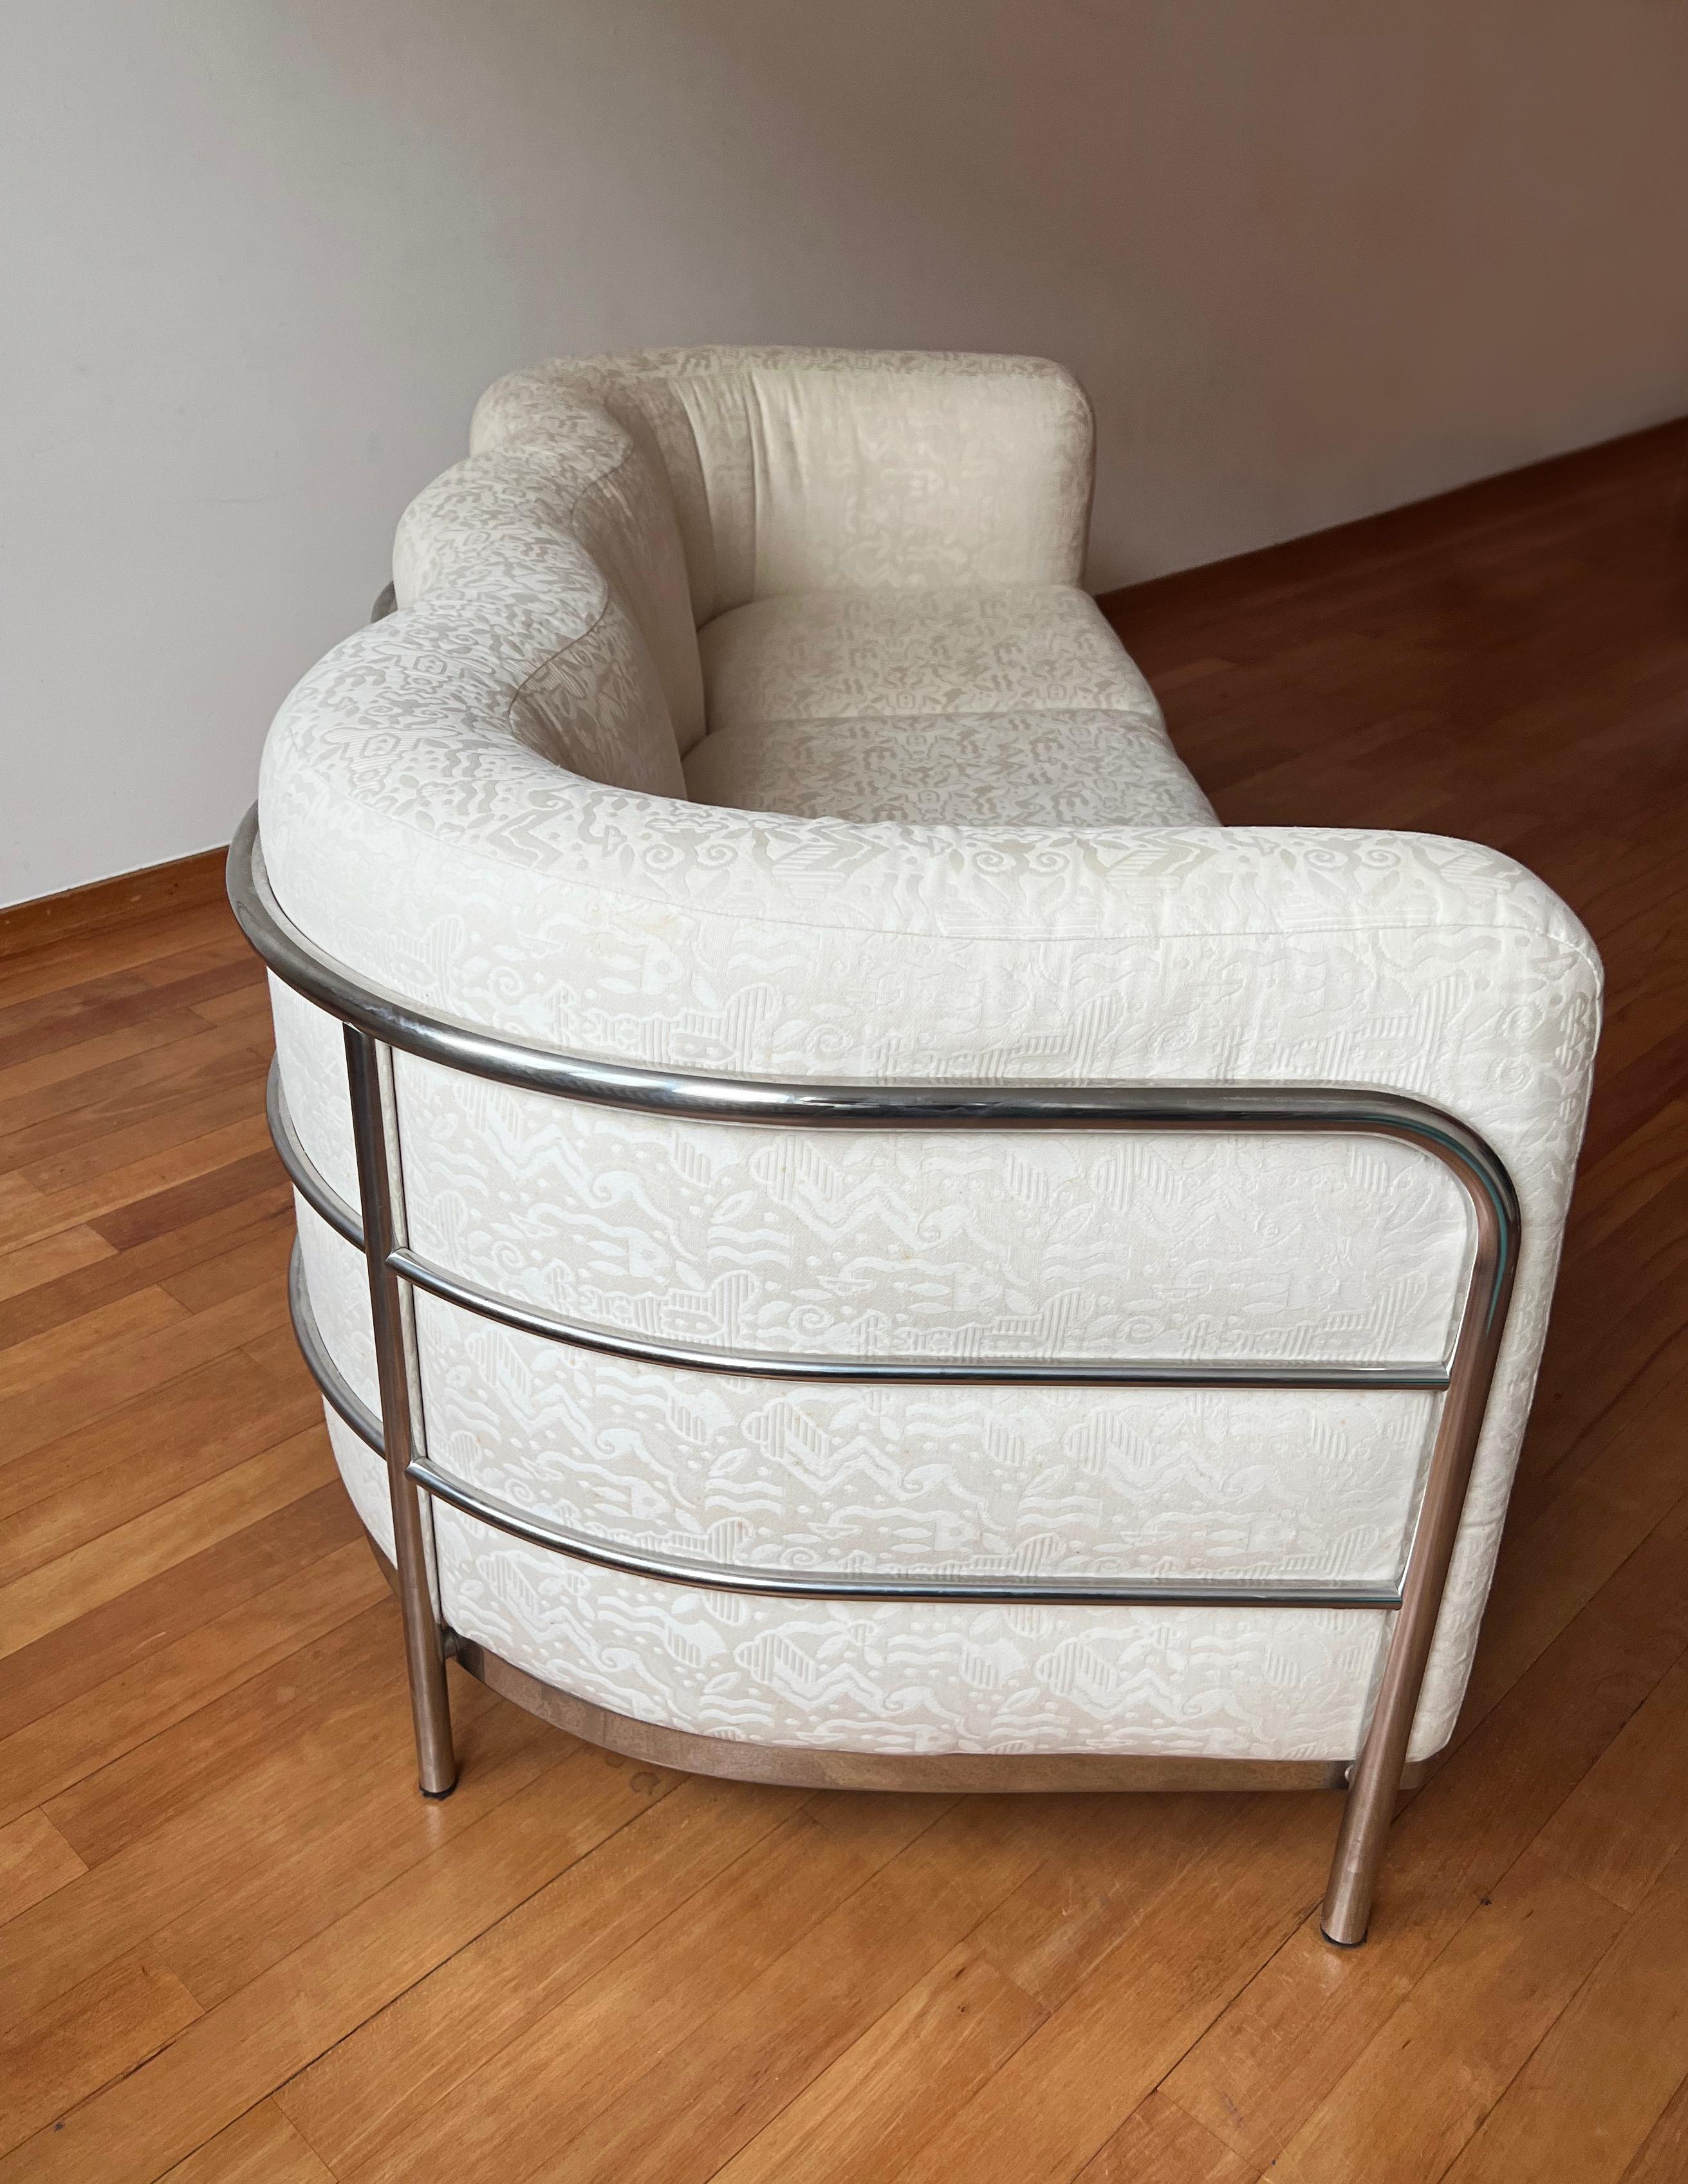 Stainless Steel Vtg 'Onda' Sofa by De Pas D’Urbino + Lomazzi for Zanotta 1980s Cream + Chrome For Sale